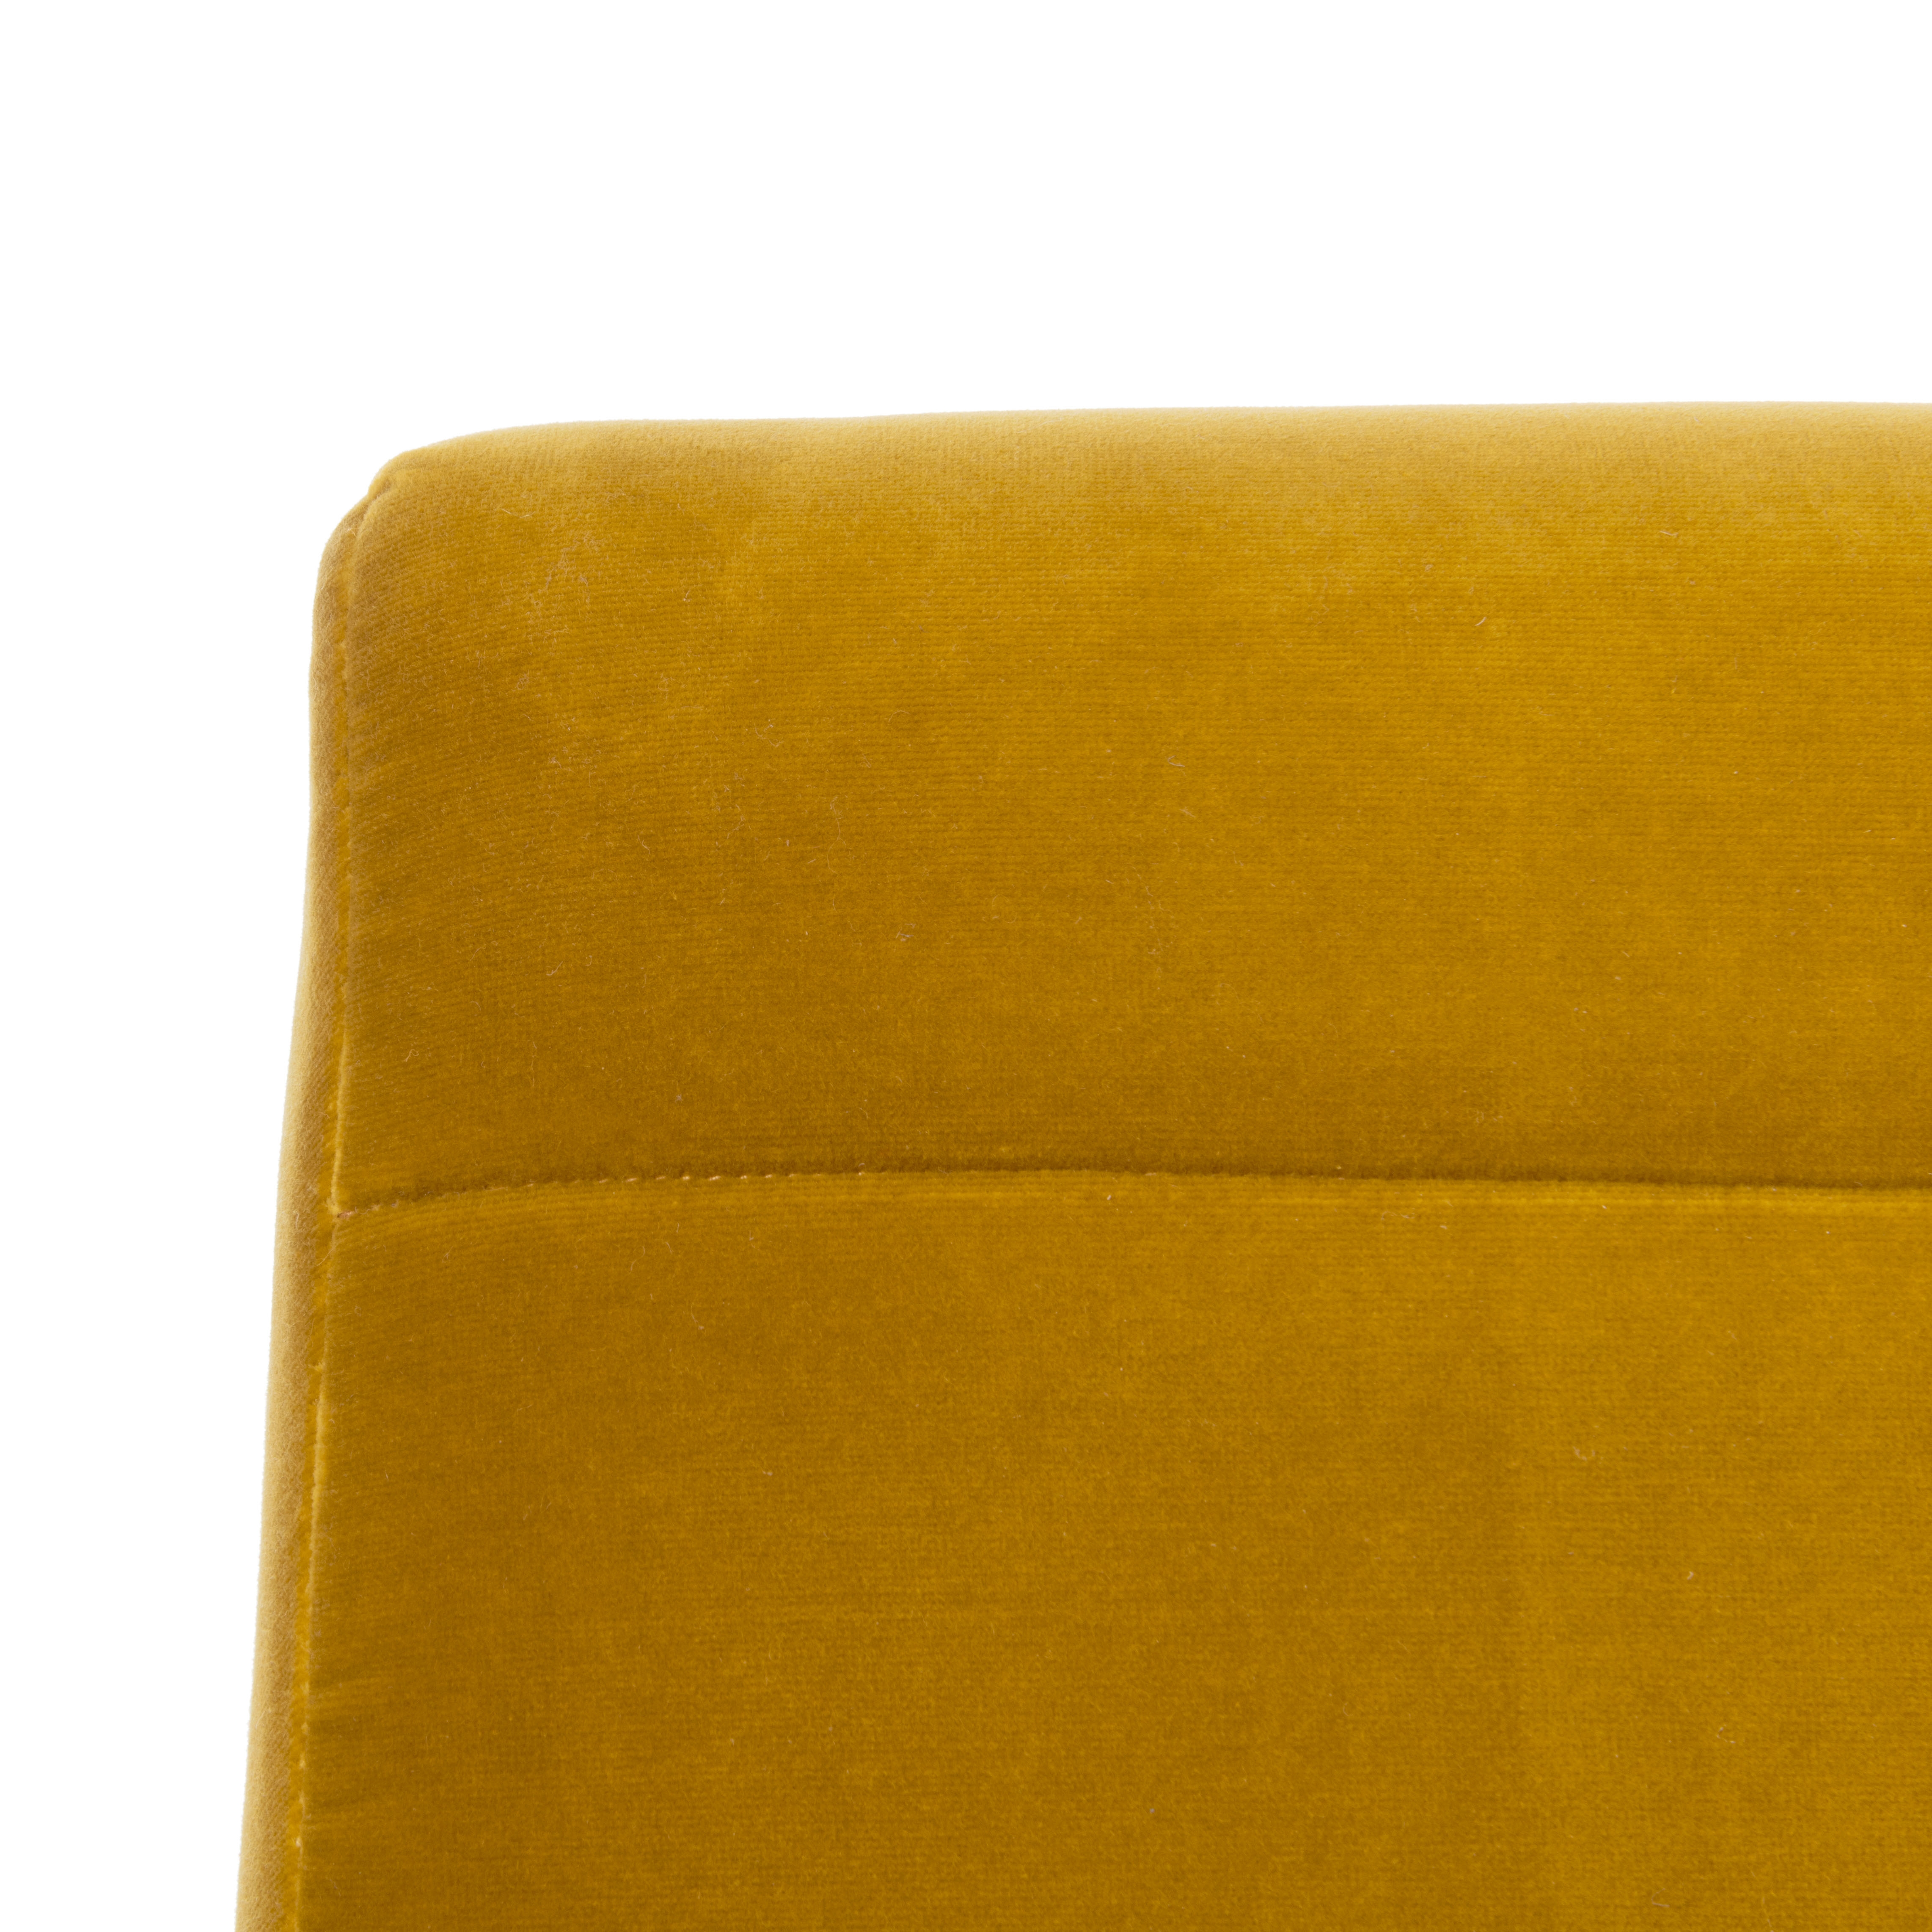 Willow Channel Tufted Arm Chair - Gold/Dark Walnut - Safavieh - Image 4